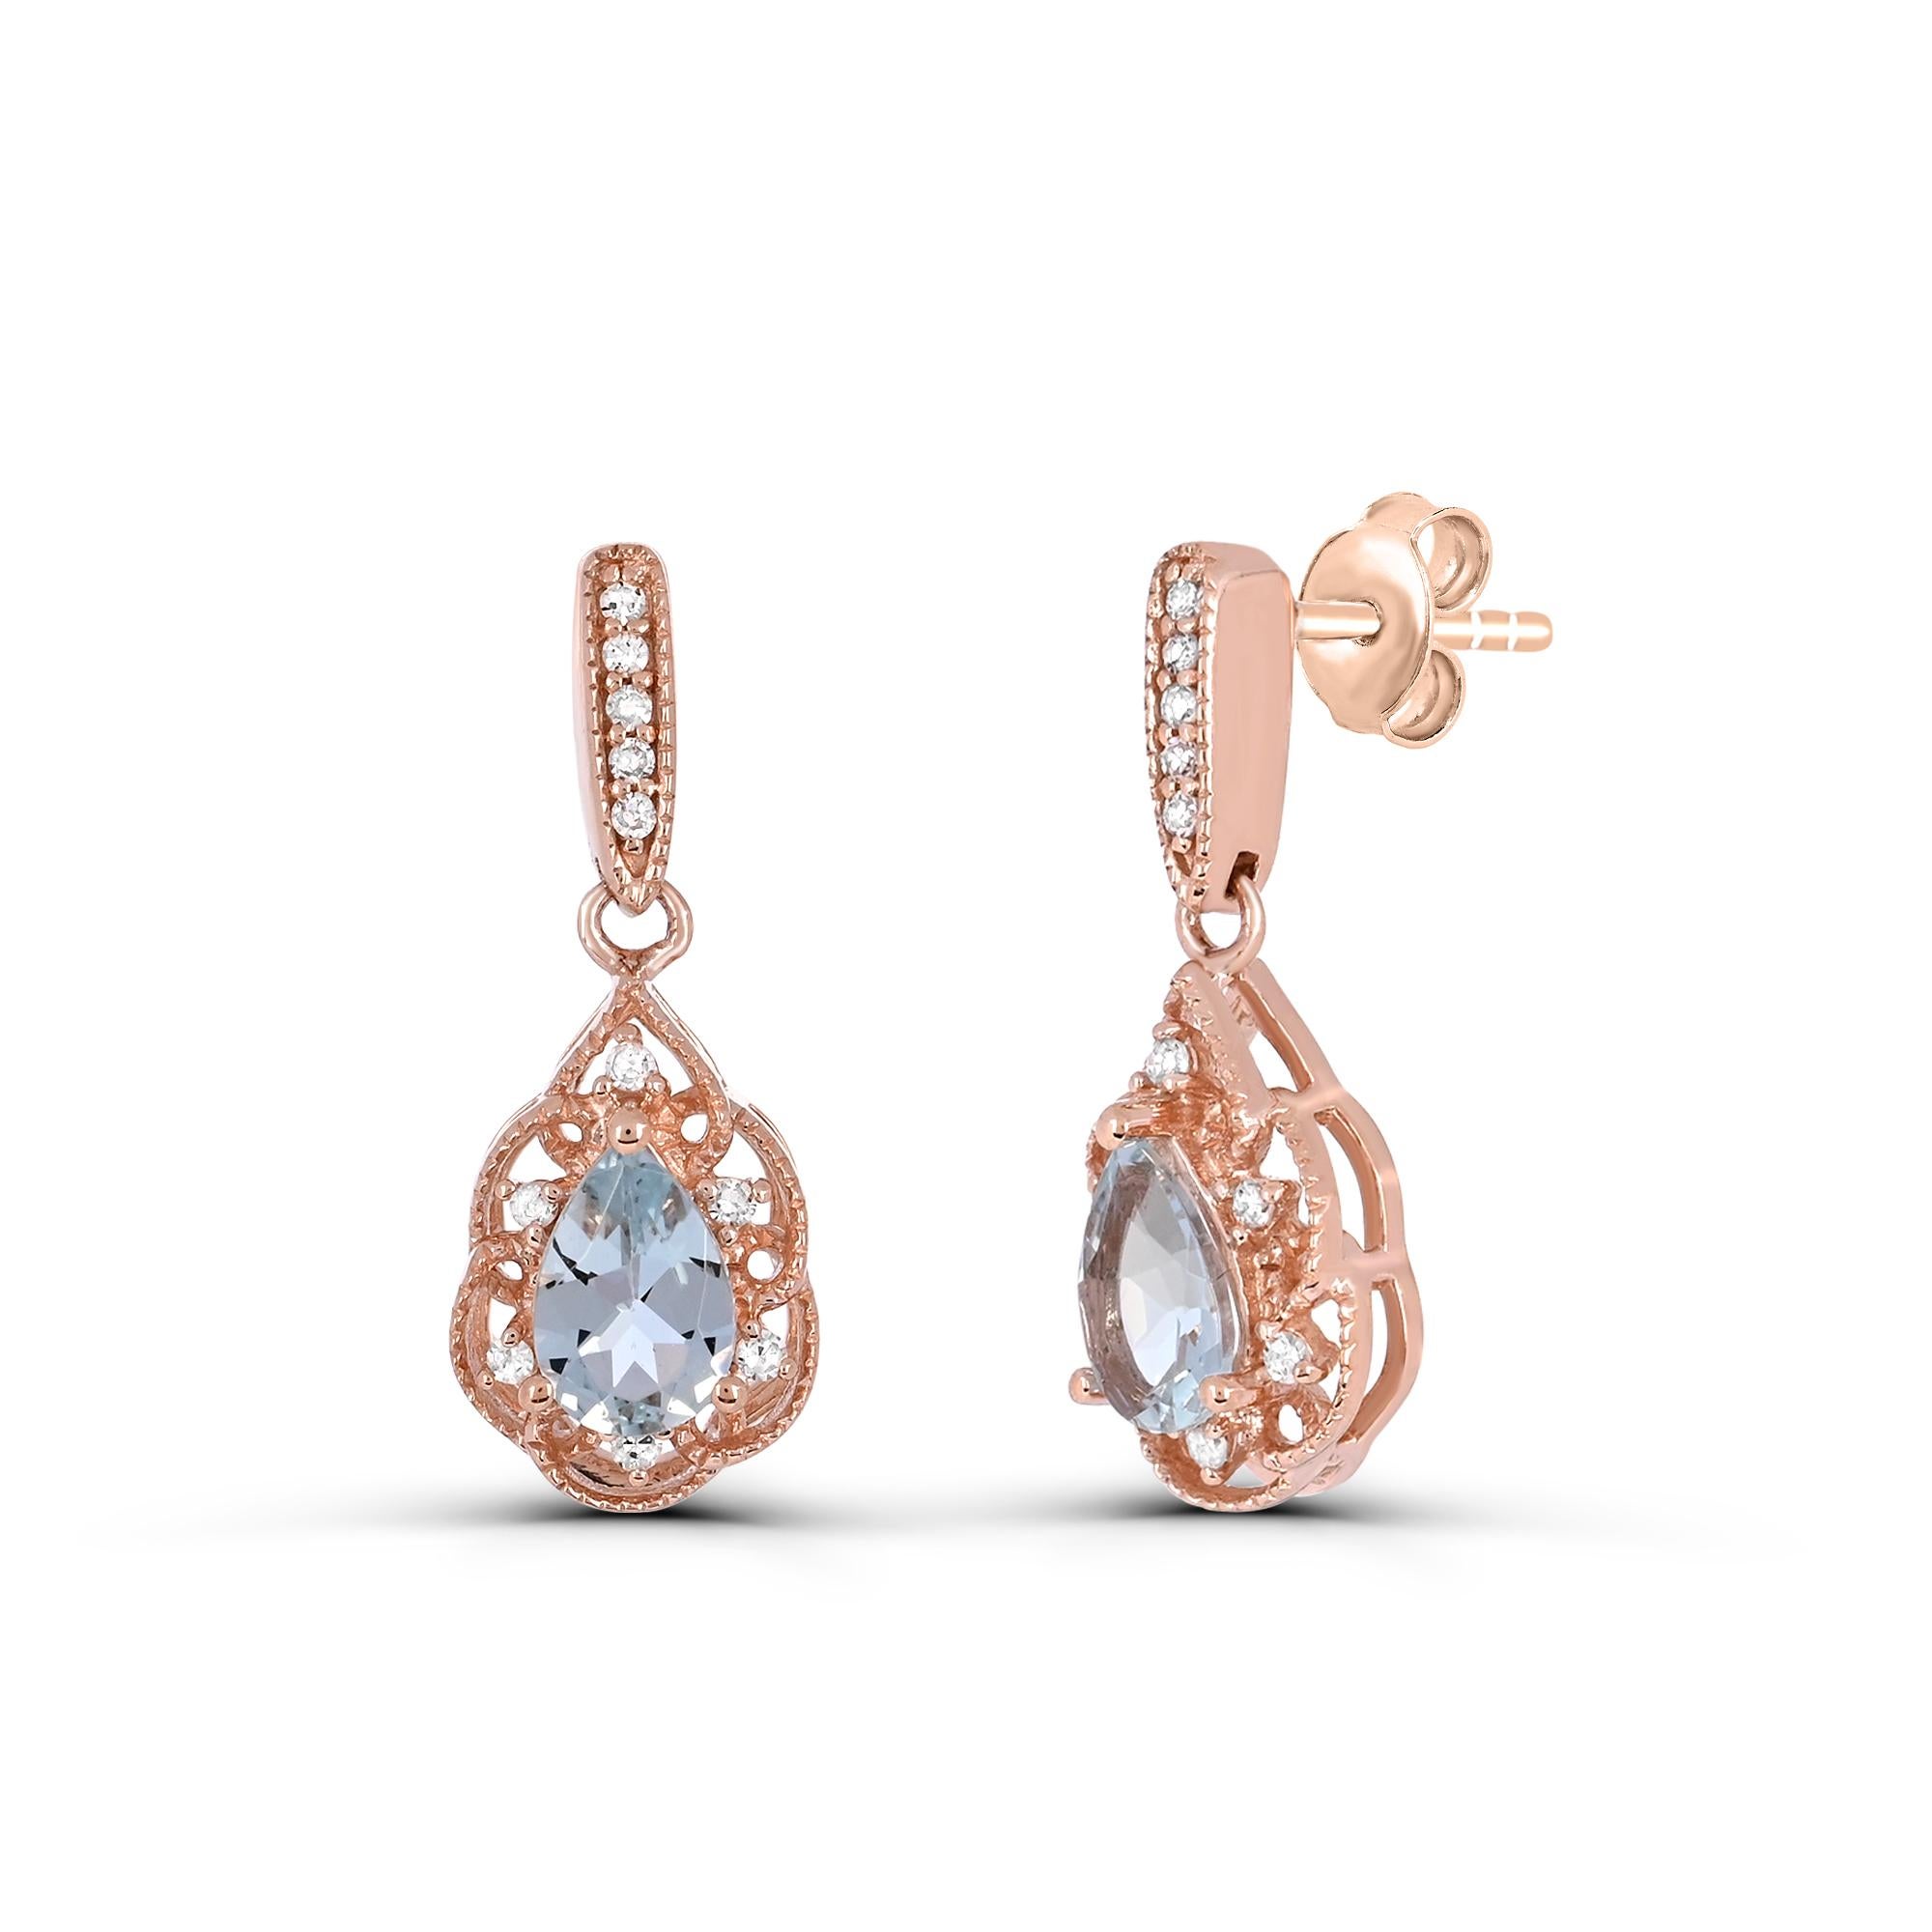 Gönnen Sie sich Eleganz mit unseren Ohrringen mit Aquamarin im Birnenschliff und rundem Diamanten in A-Qualität aus 14 Karat Roségold. Die mit viel Liebe zum Detail gefertigten Ohrringe sind mit einem atemberaubenden birnenförmigen Aquamarin in